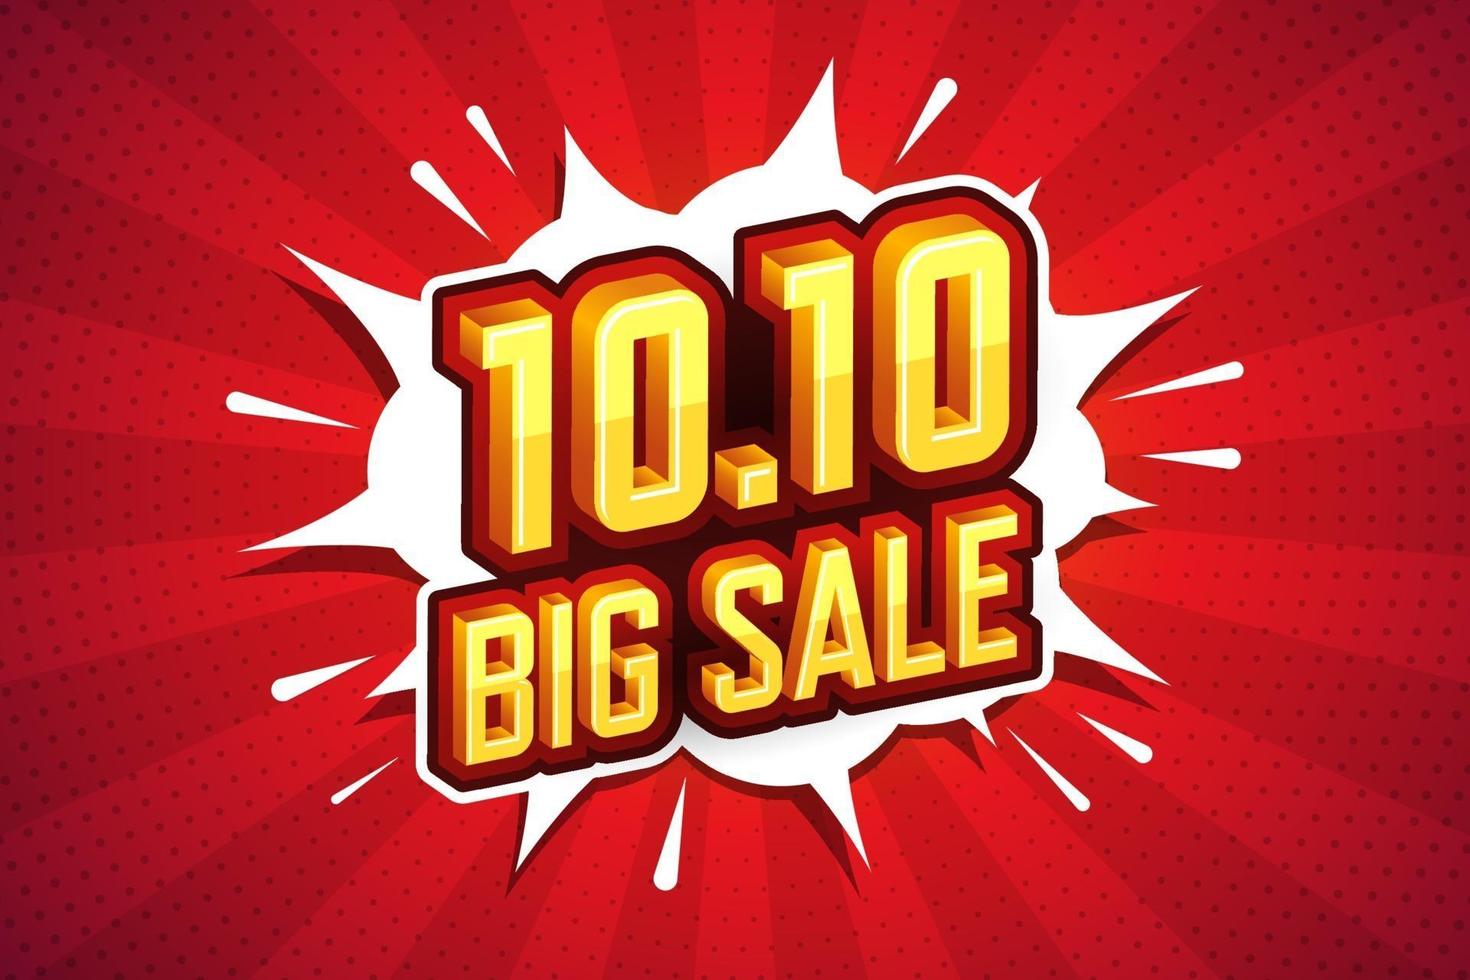 10.10 Big sale font expression pop art comic speech bubble. Vector illustration